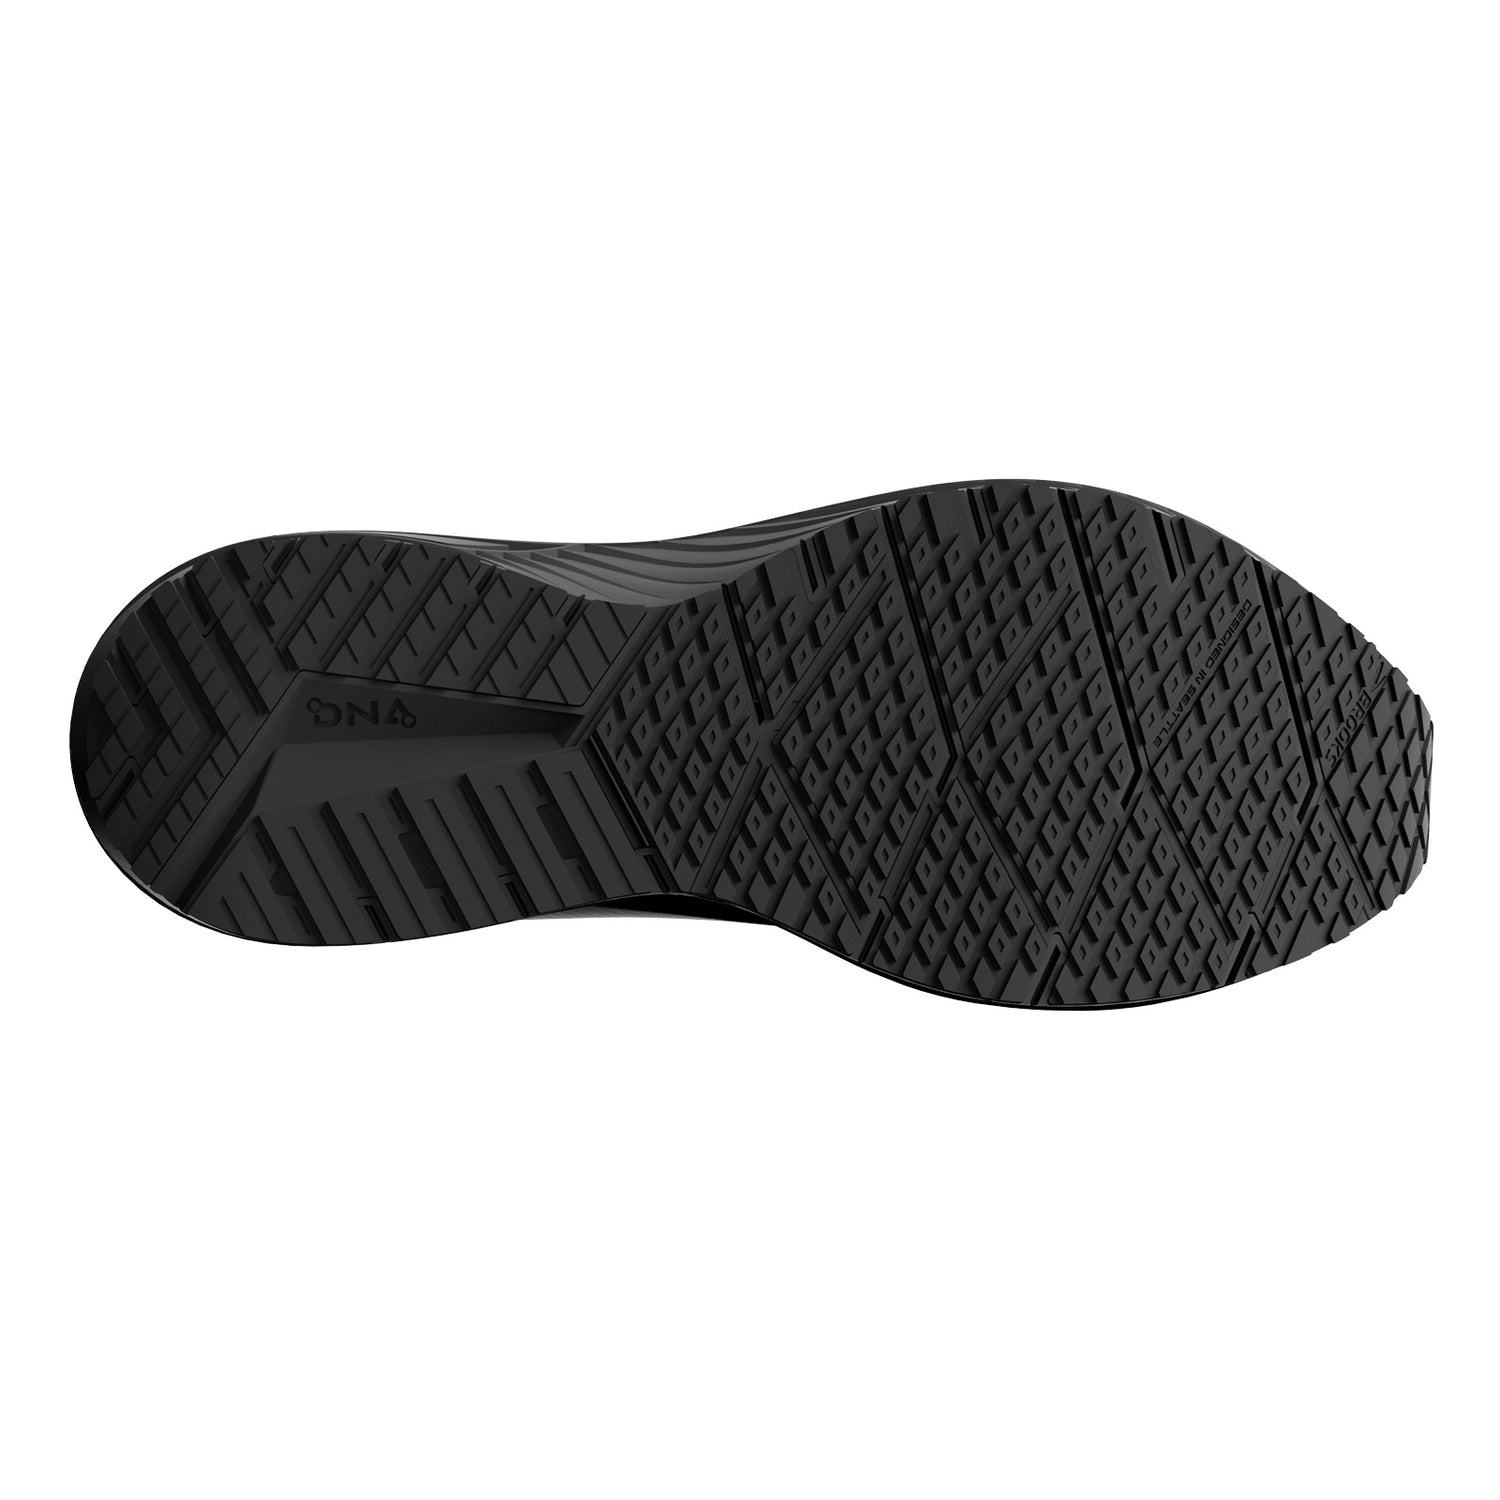 Peltz Shoes  Men's Brooks Revel 6 Running Shoe Black/Pearl/Gray 110398 1D 072